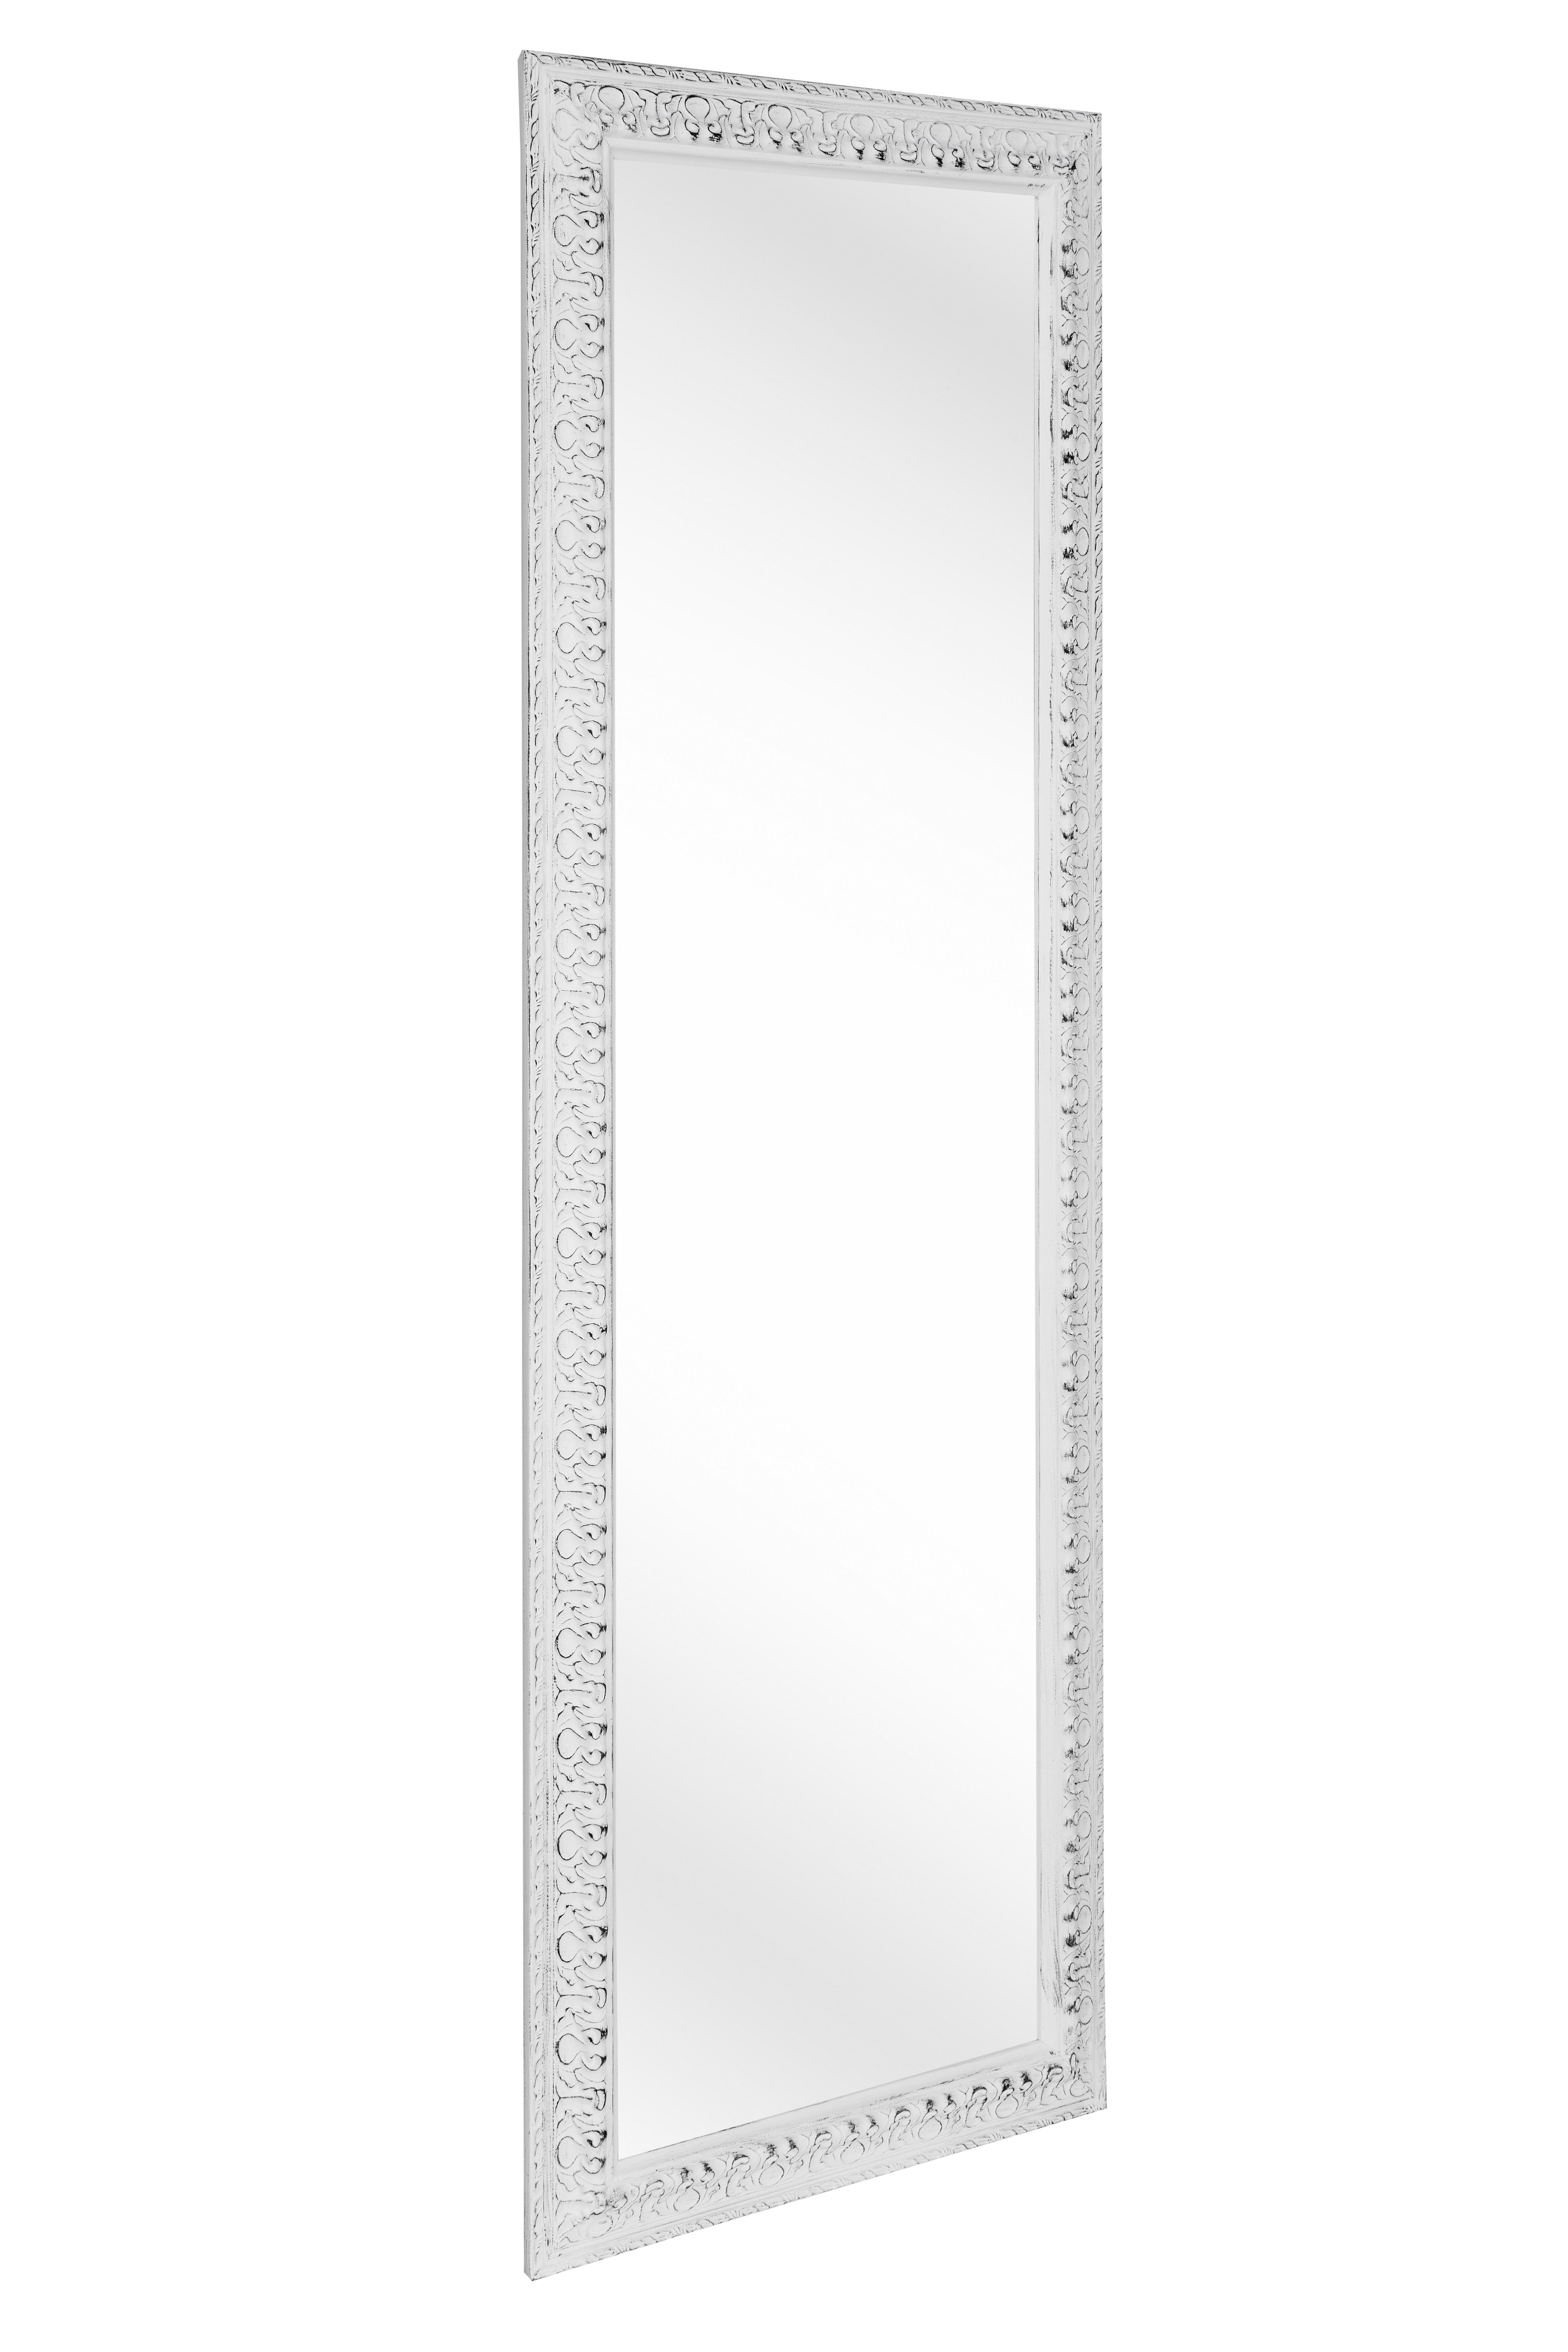 STENSKO OGLEDALO, 50/150/3 cm steklo  - bela, Trendi, steklo/les (50/150/3cm) - Carryhome